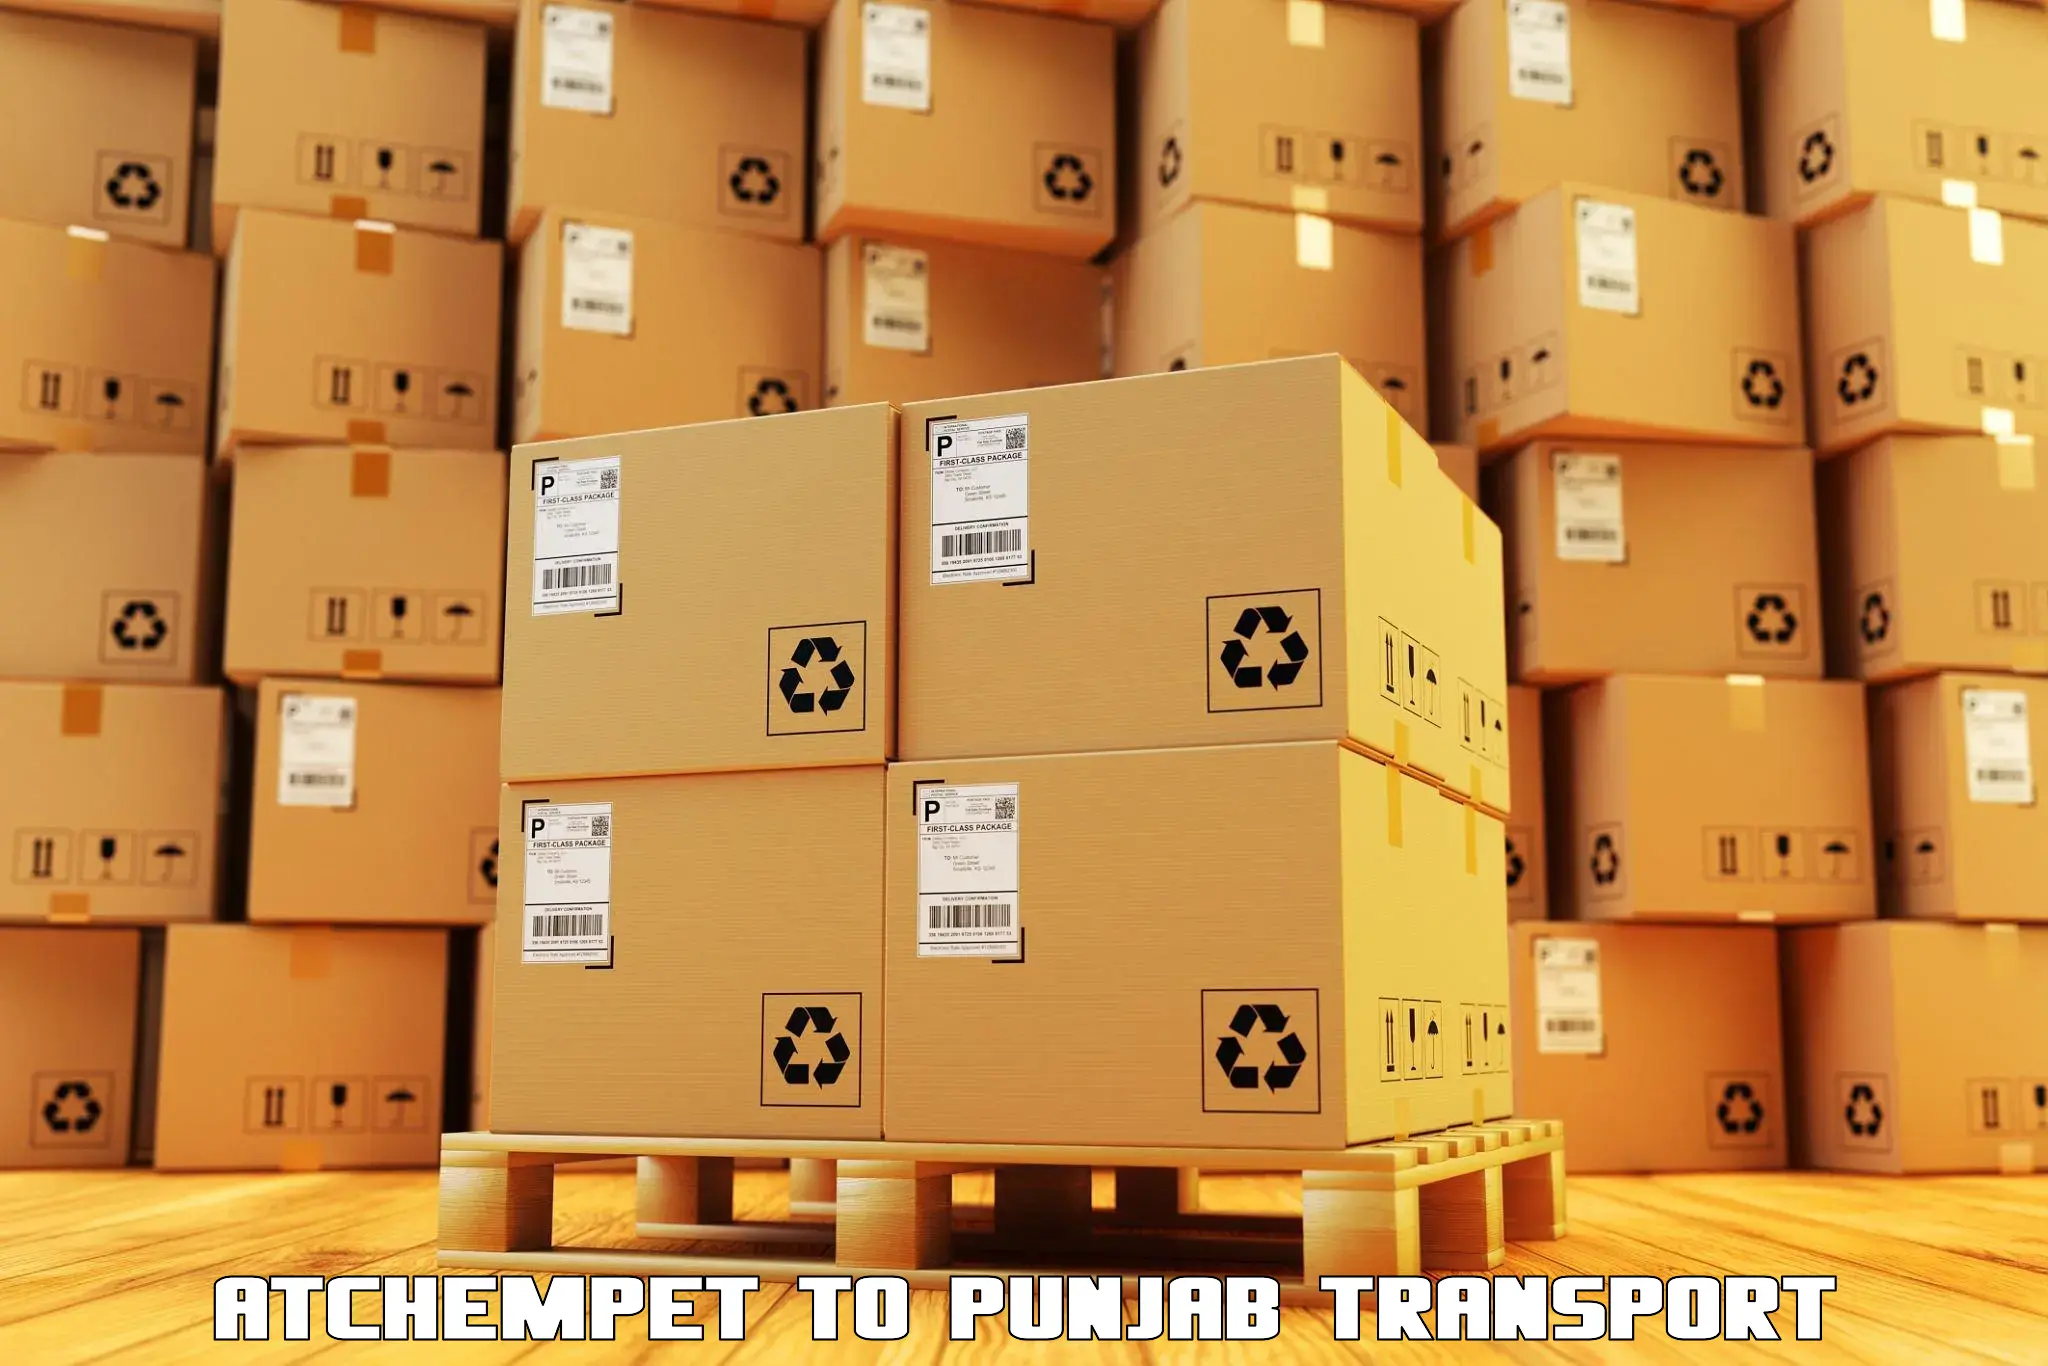 Nearby transport service Atchempet to Punjab